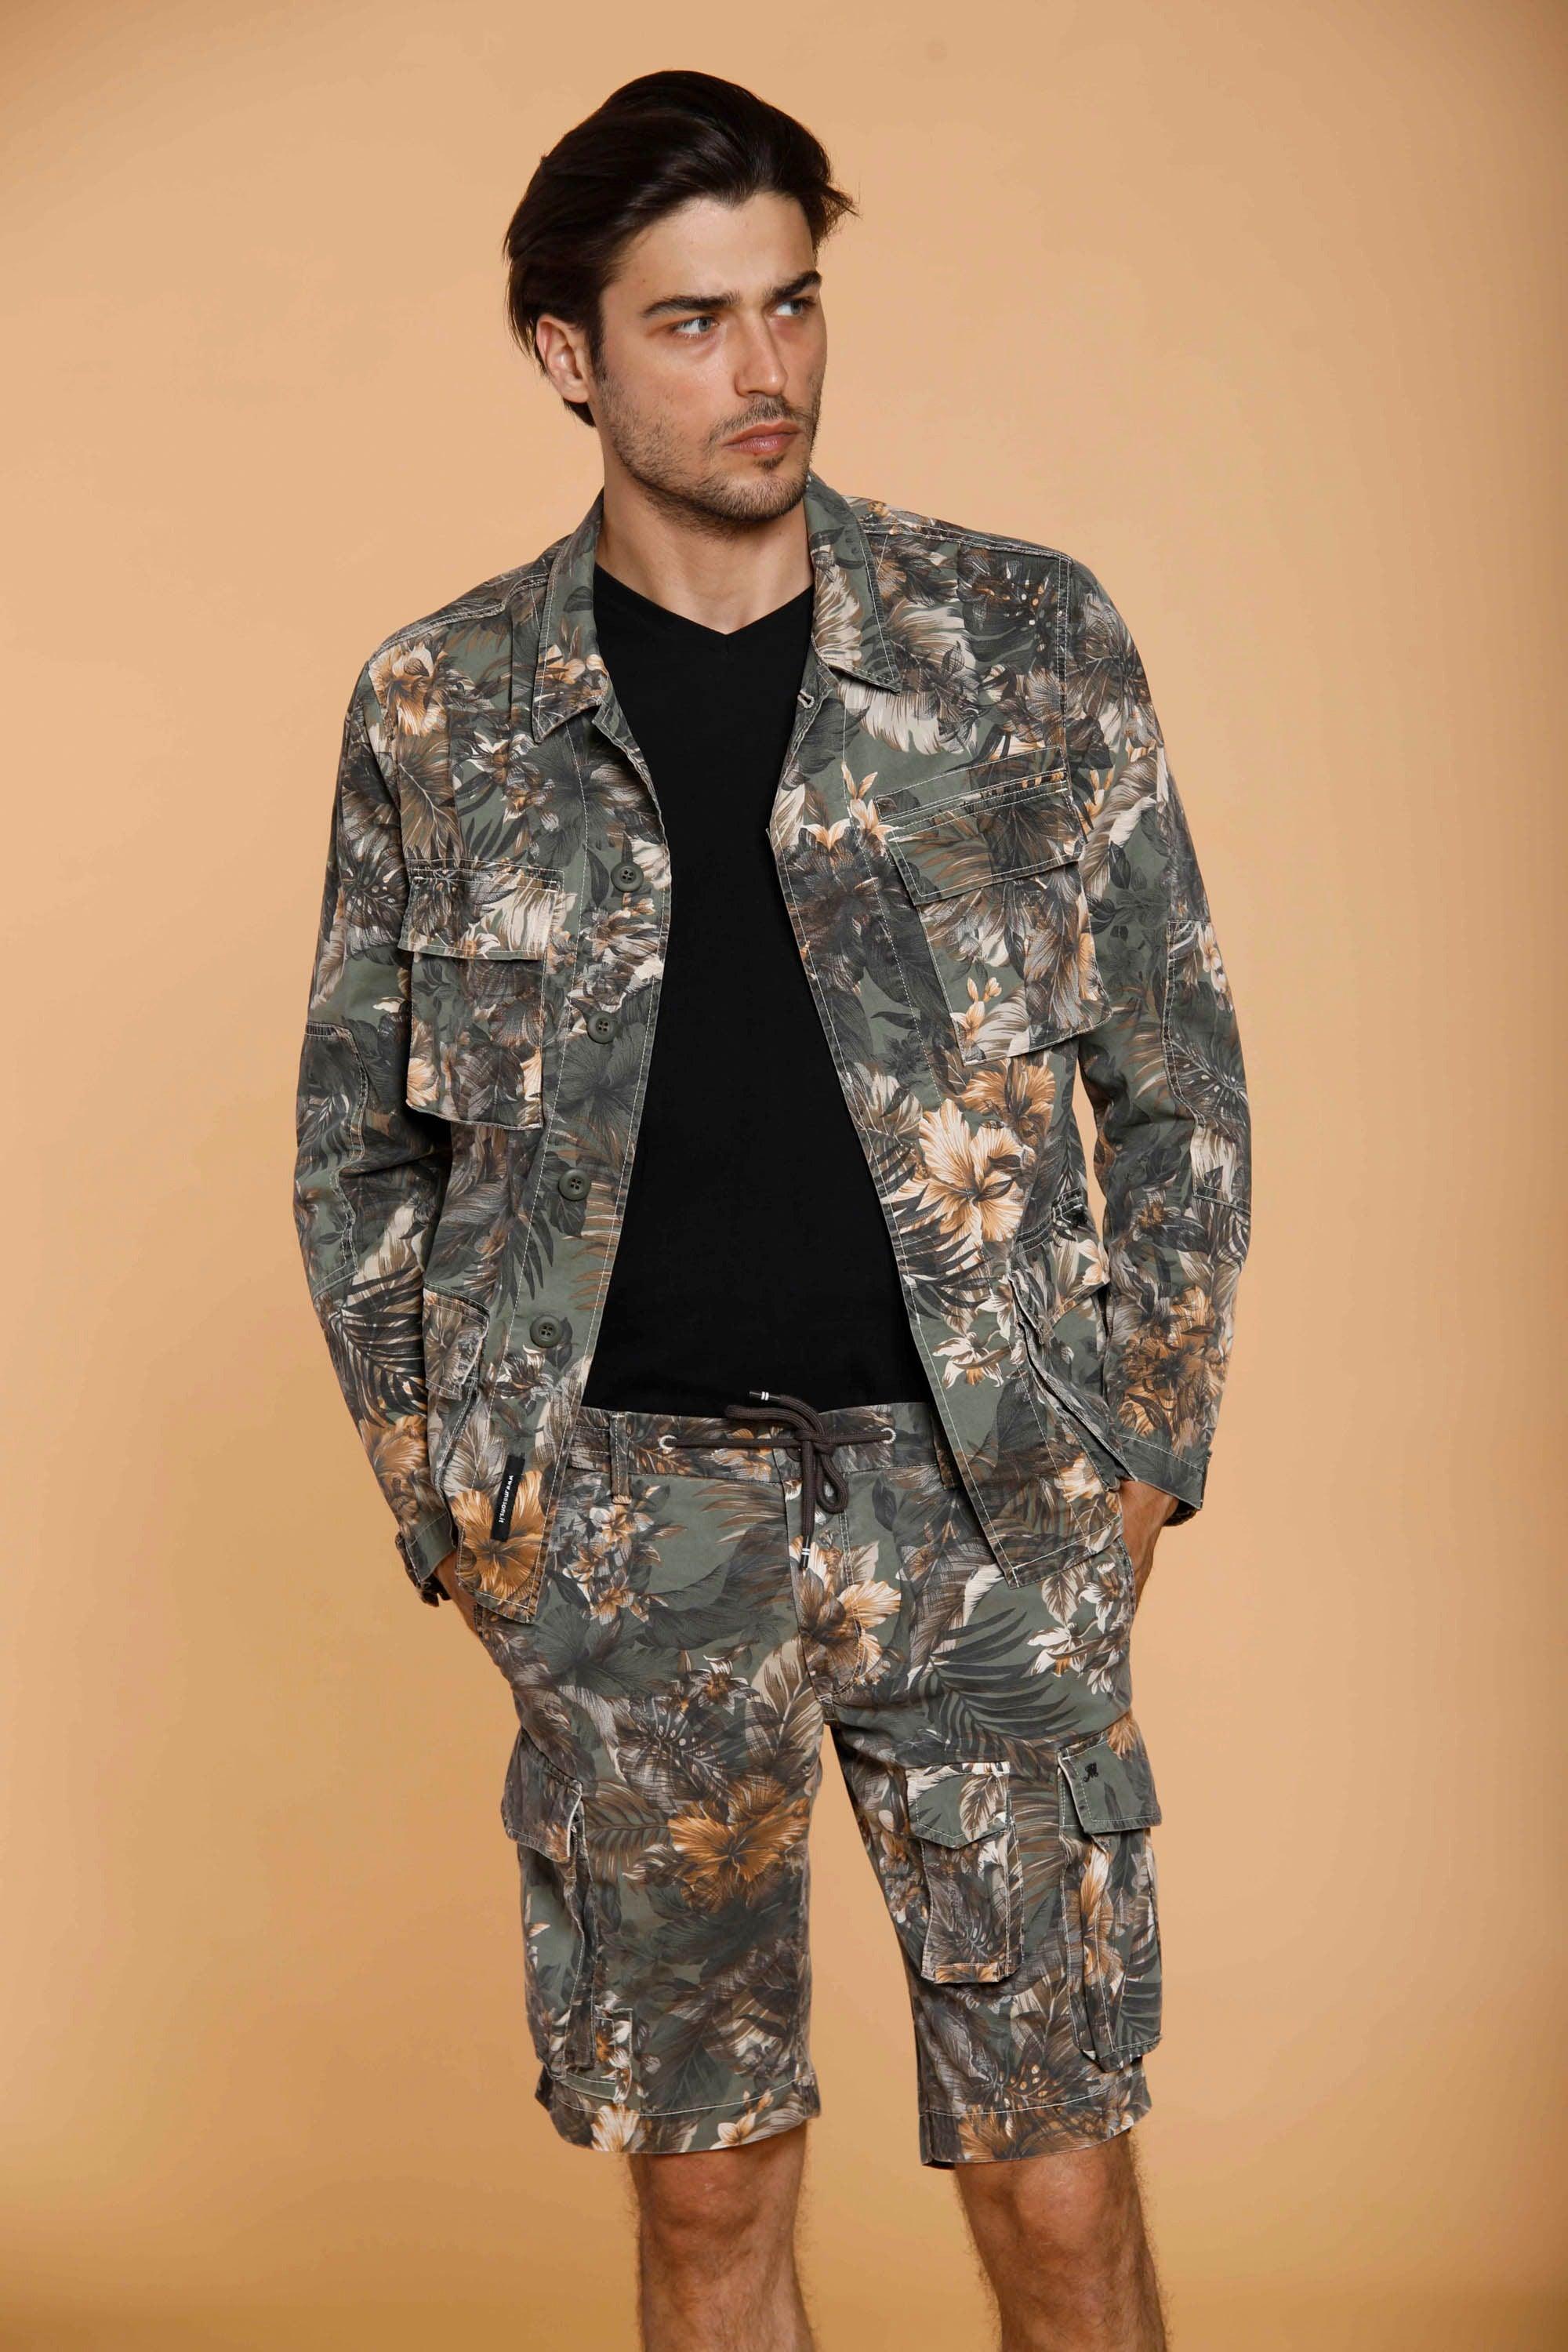 Flyshirt giacca camicia da uomo in cotone con stampa floreale - Mason's